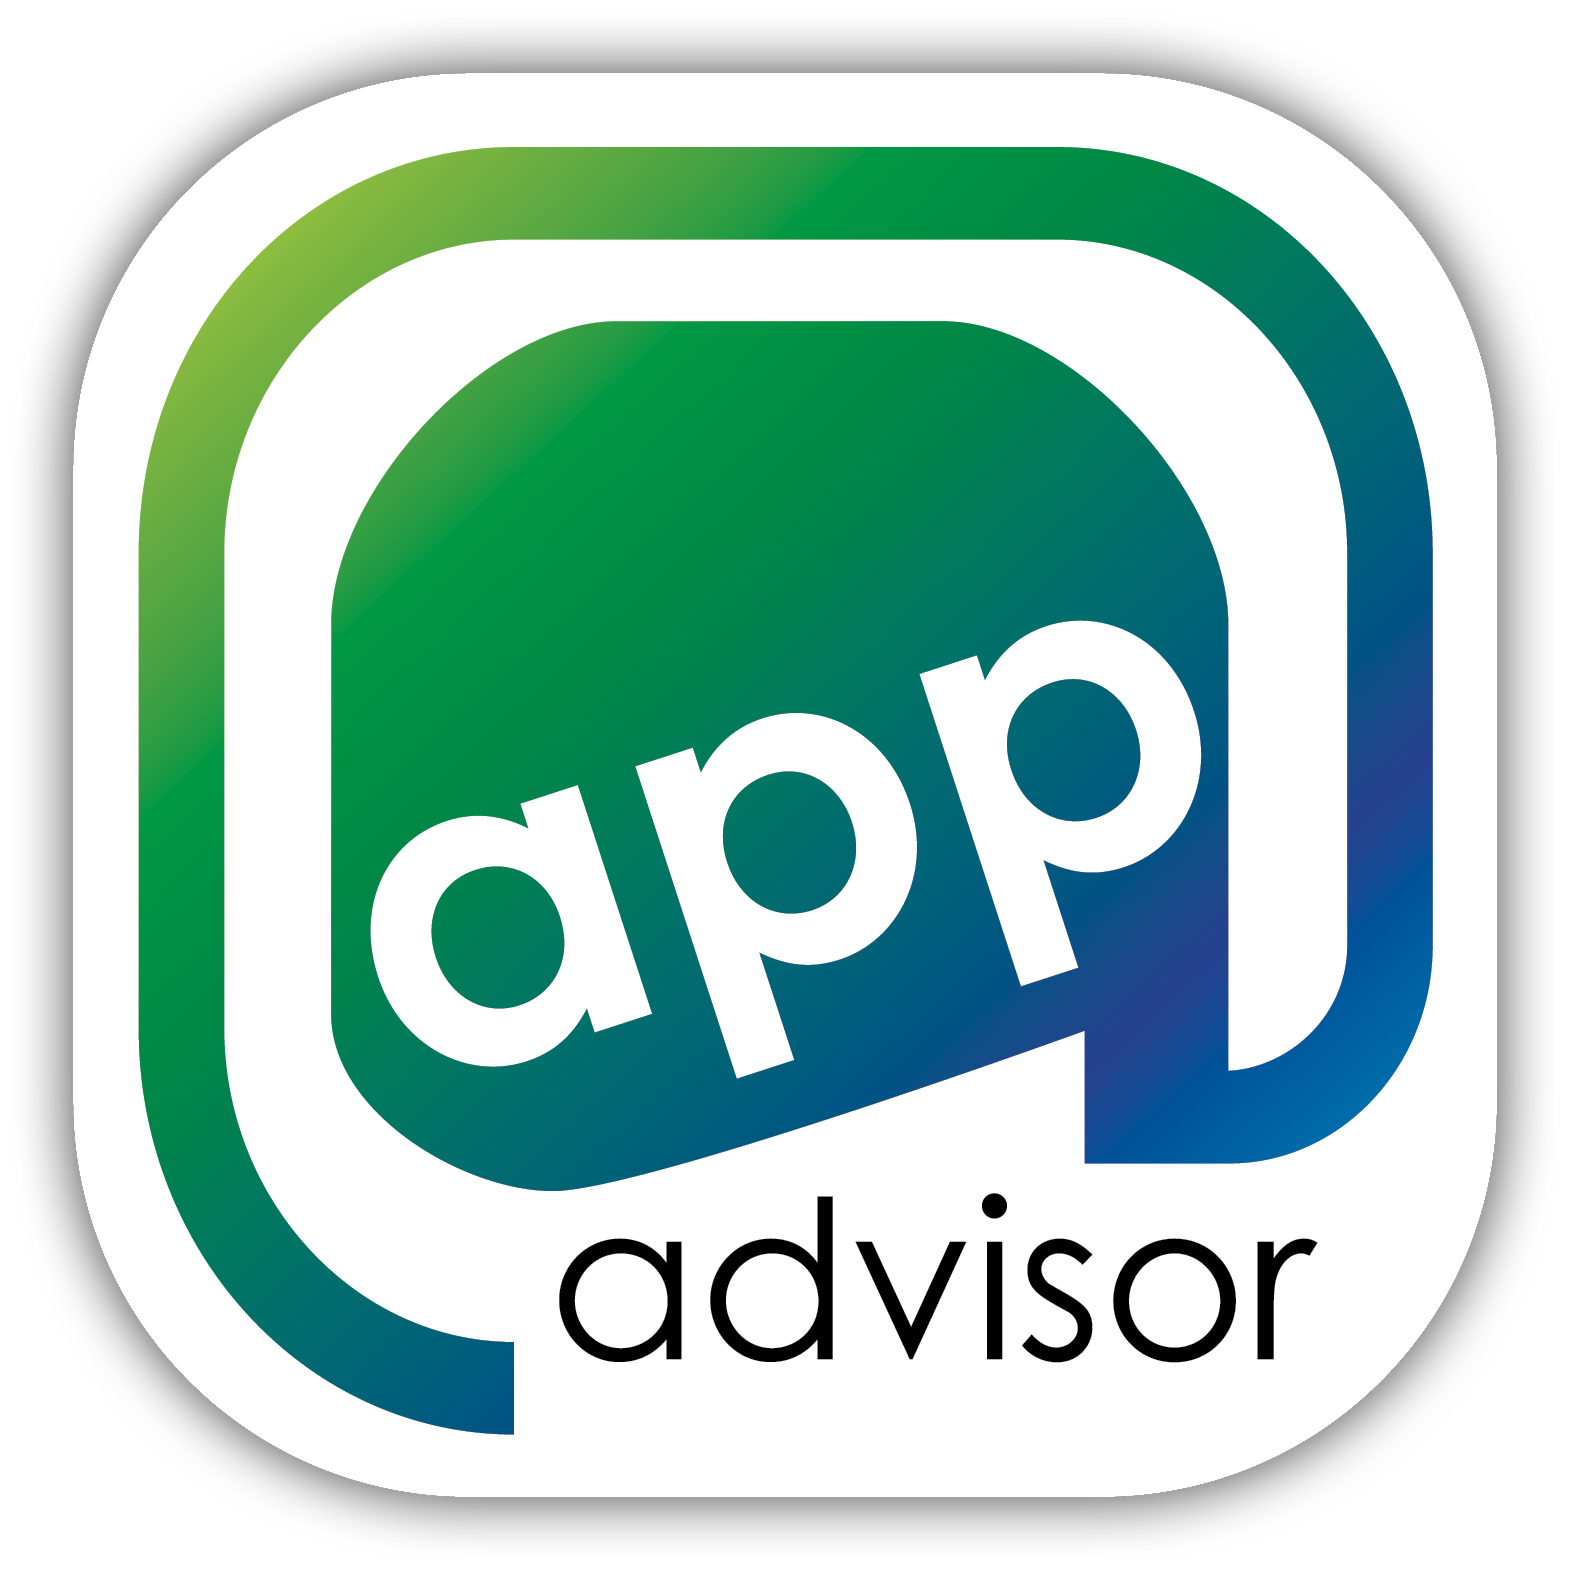 App Advisor